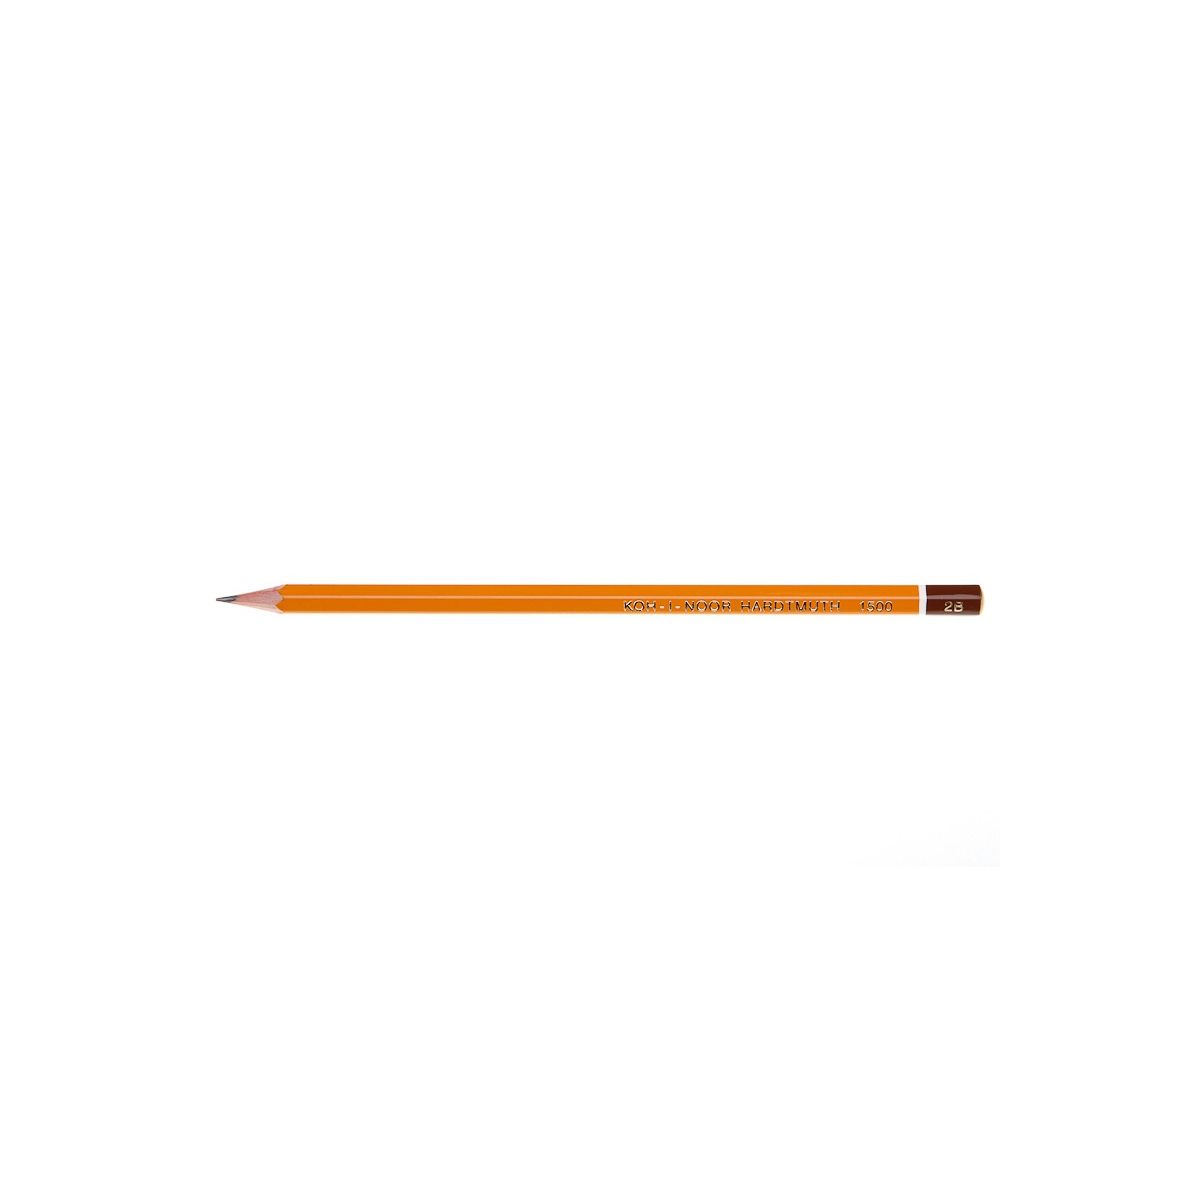 Ołówek techniczny Koh-I-Noor 8B-10H w metalowym pudełku 24 szt. (1504)